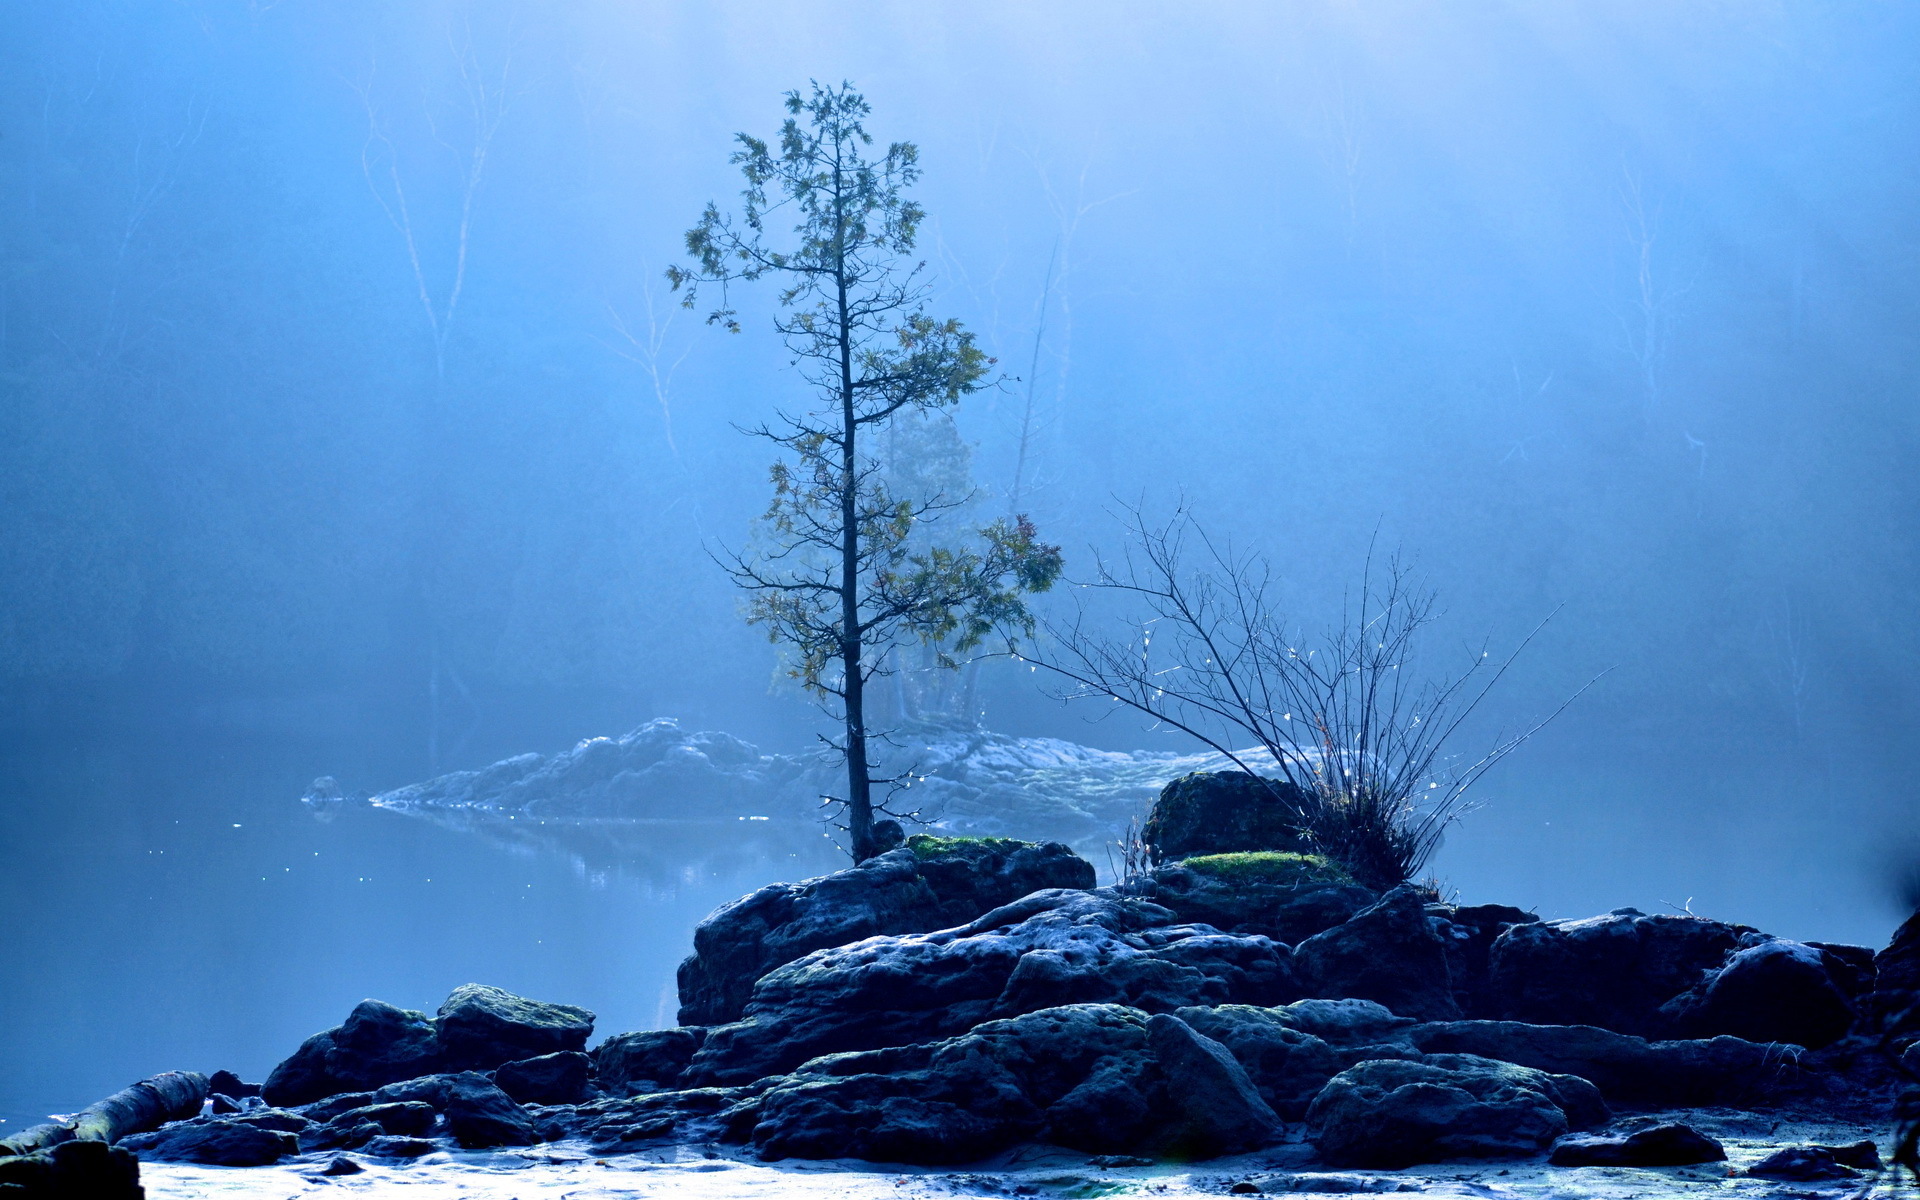 Штиль туман. Природа спокойствие. Одинокое дерево. Камни в тумане. Лес и море.